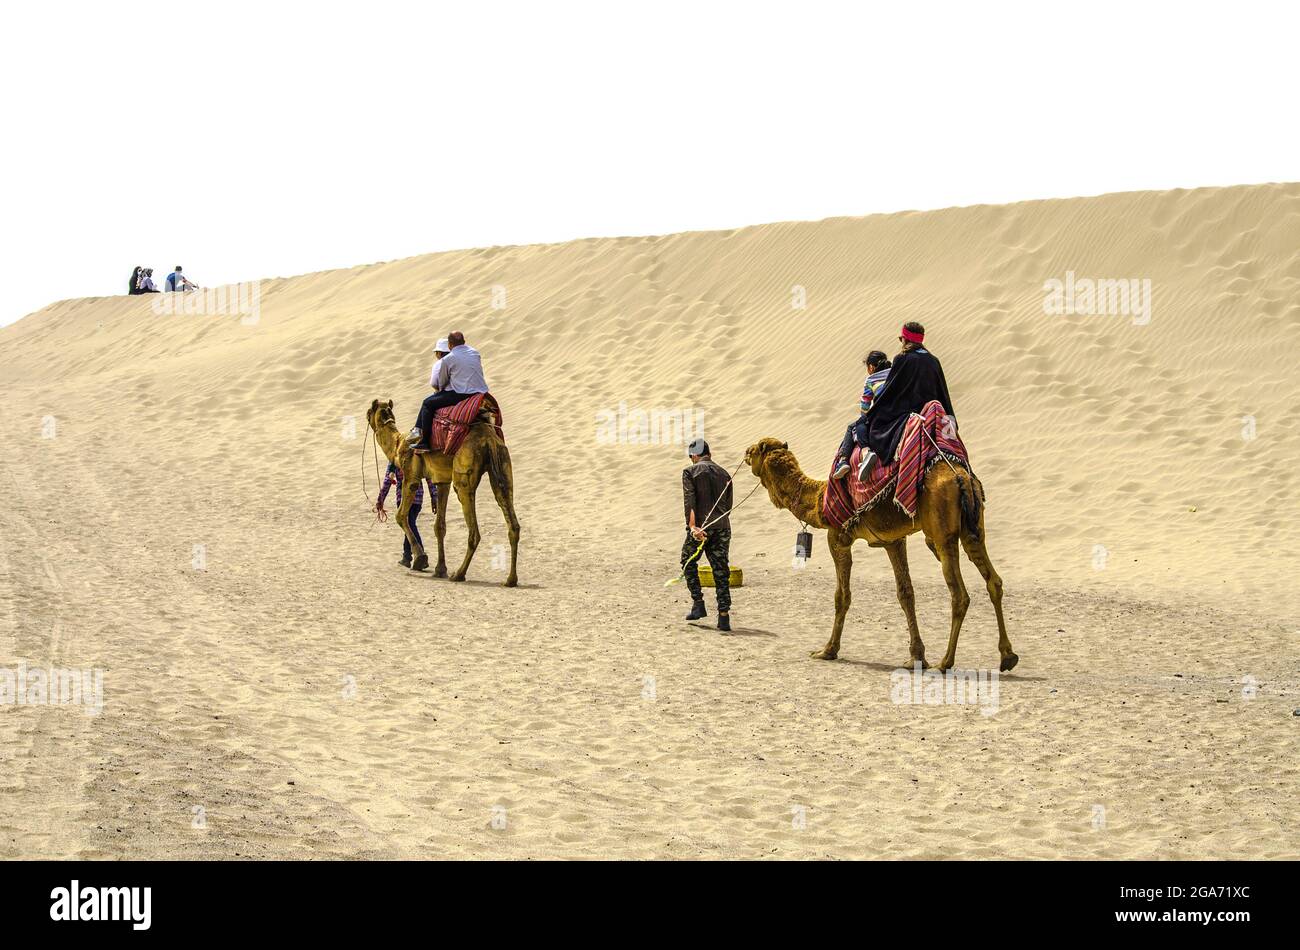 Yazd, Wüste, Iran, 20. Februar 2021: Die Führer mit zwei Kamelen bedeckt mit hellen Teppichen, auf einem sind ein Mann und ein Kind, auf dem anderen eine Frau und ein c Stockfoto